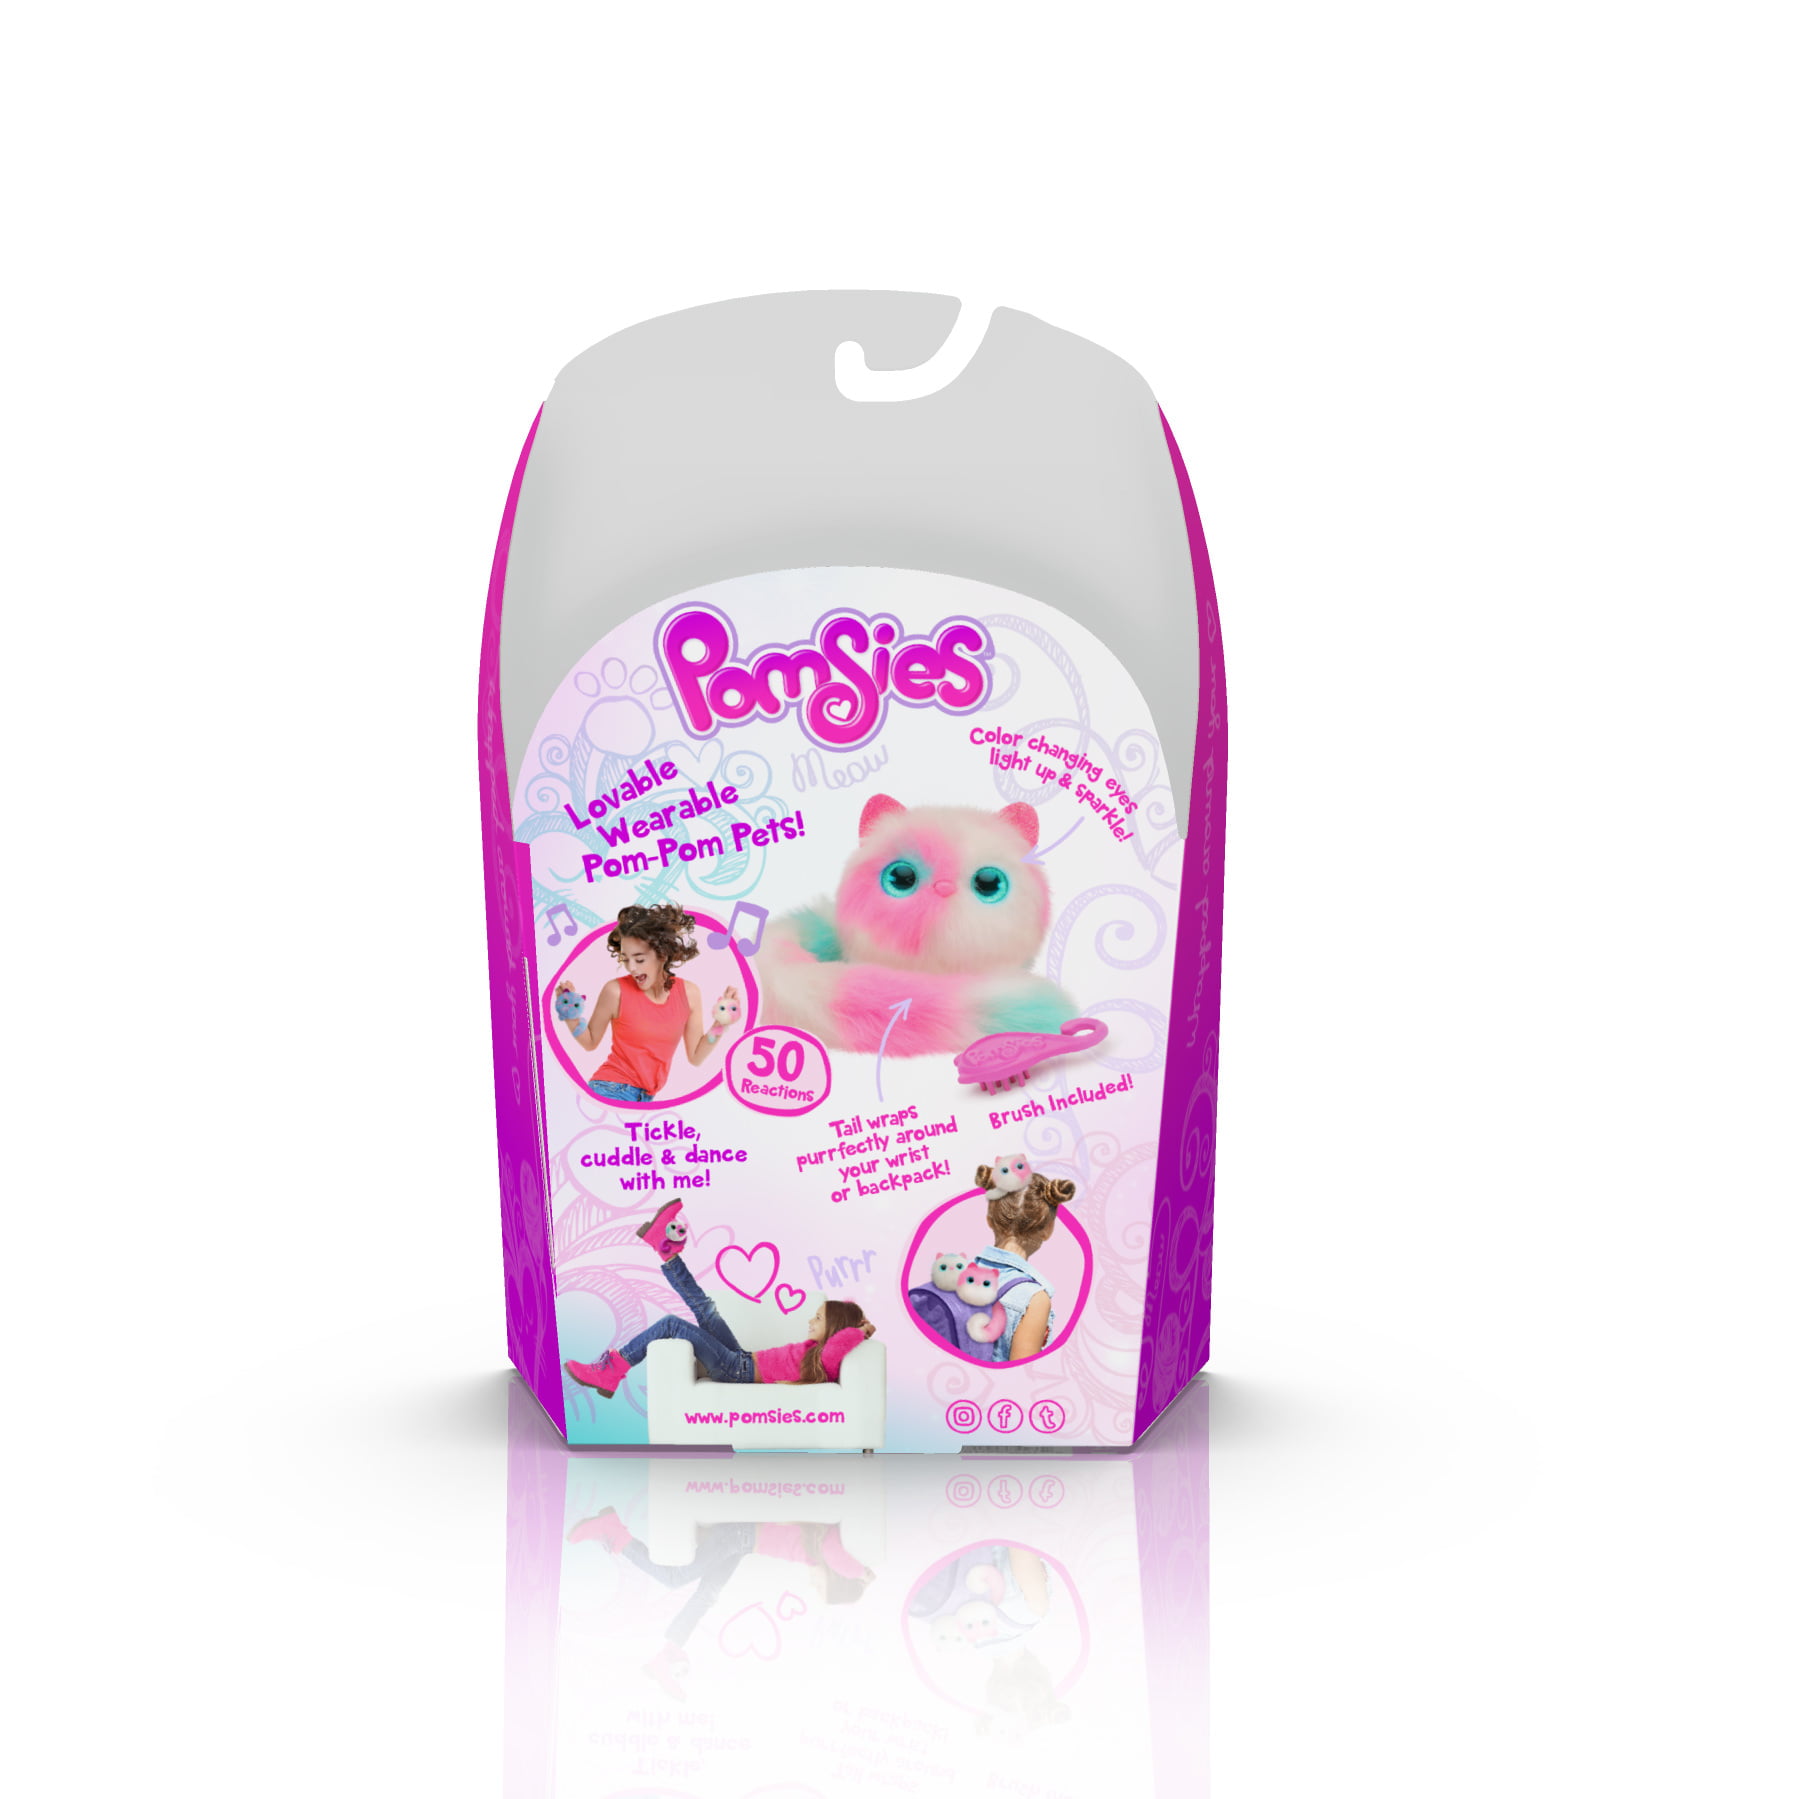 Интерактивная игрушка Pomsies. Интерактивная игрушка Pomsies Pinky. Pomsies Patches. Пушистый питомец Pomsies. Pink pets